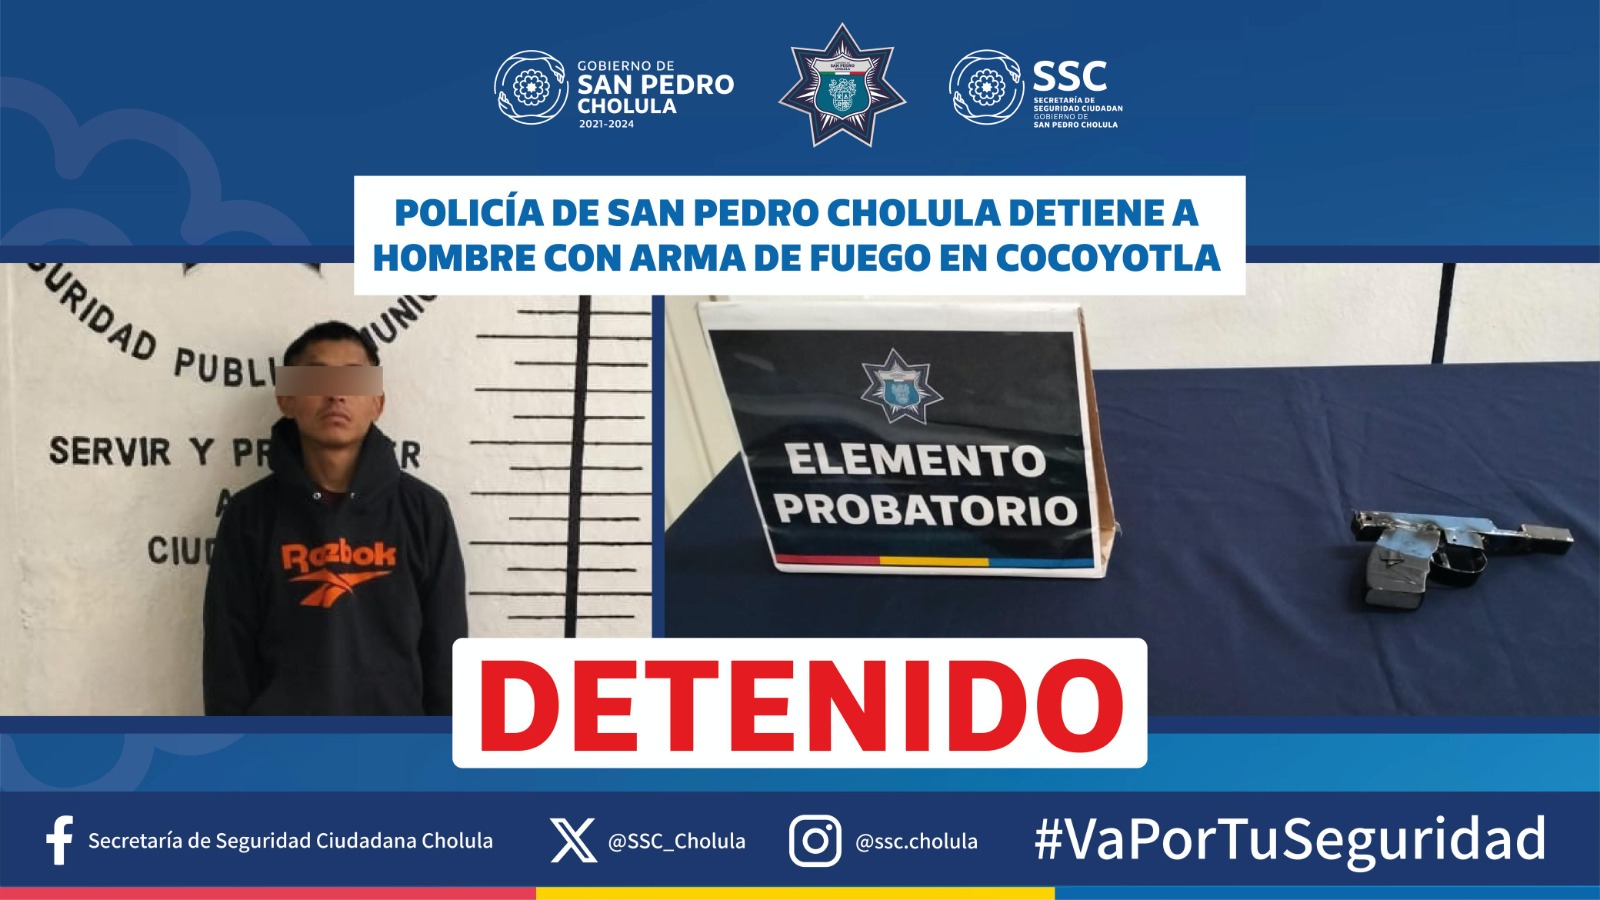 Acciones de seguridad en San Pedro Cholula: Detenido por portación Ilegal de arma